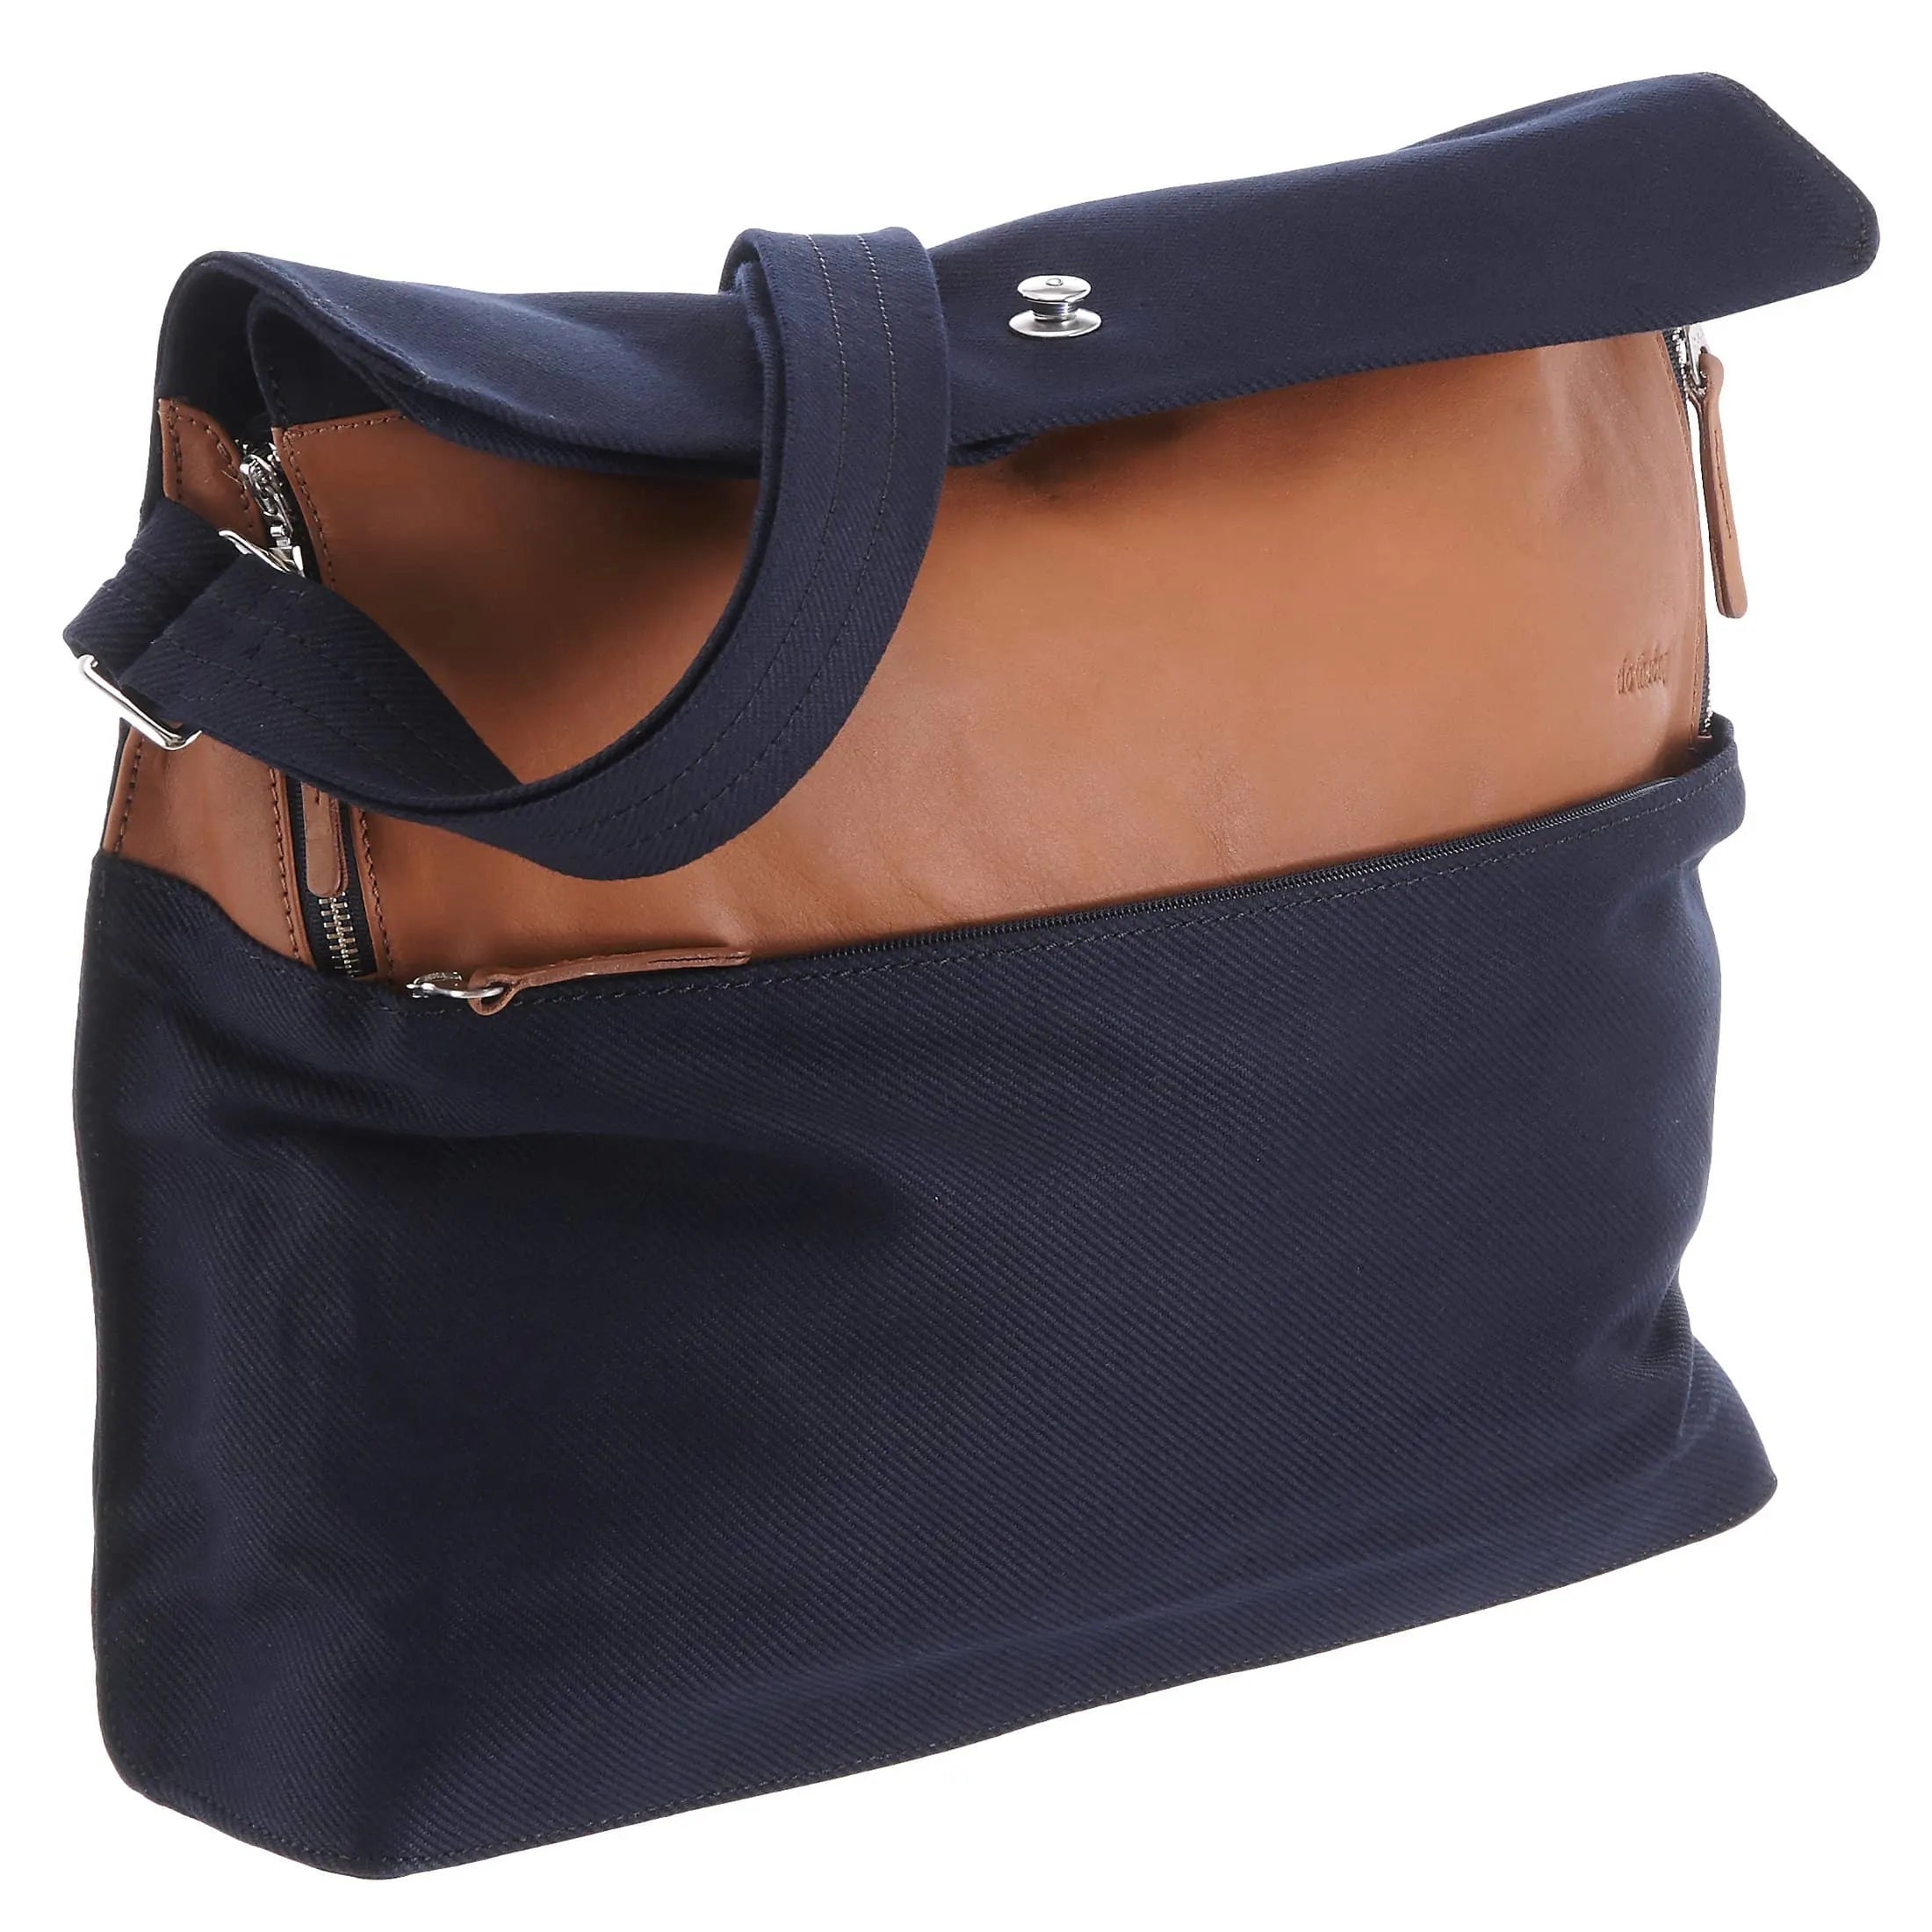 Harolds Dothebag Mailbag messenger bag with laptop compartment 40 cm - blue/natural